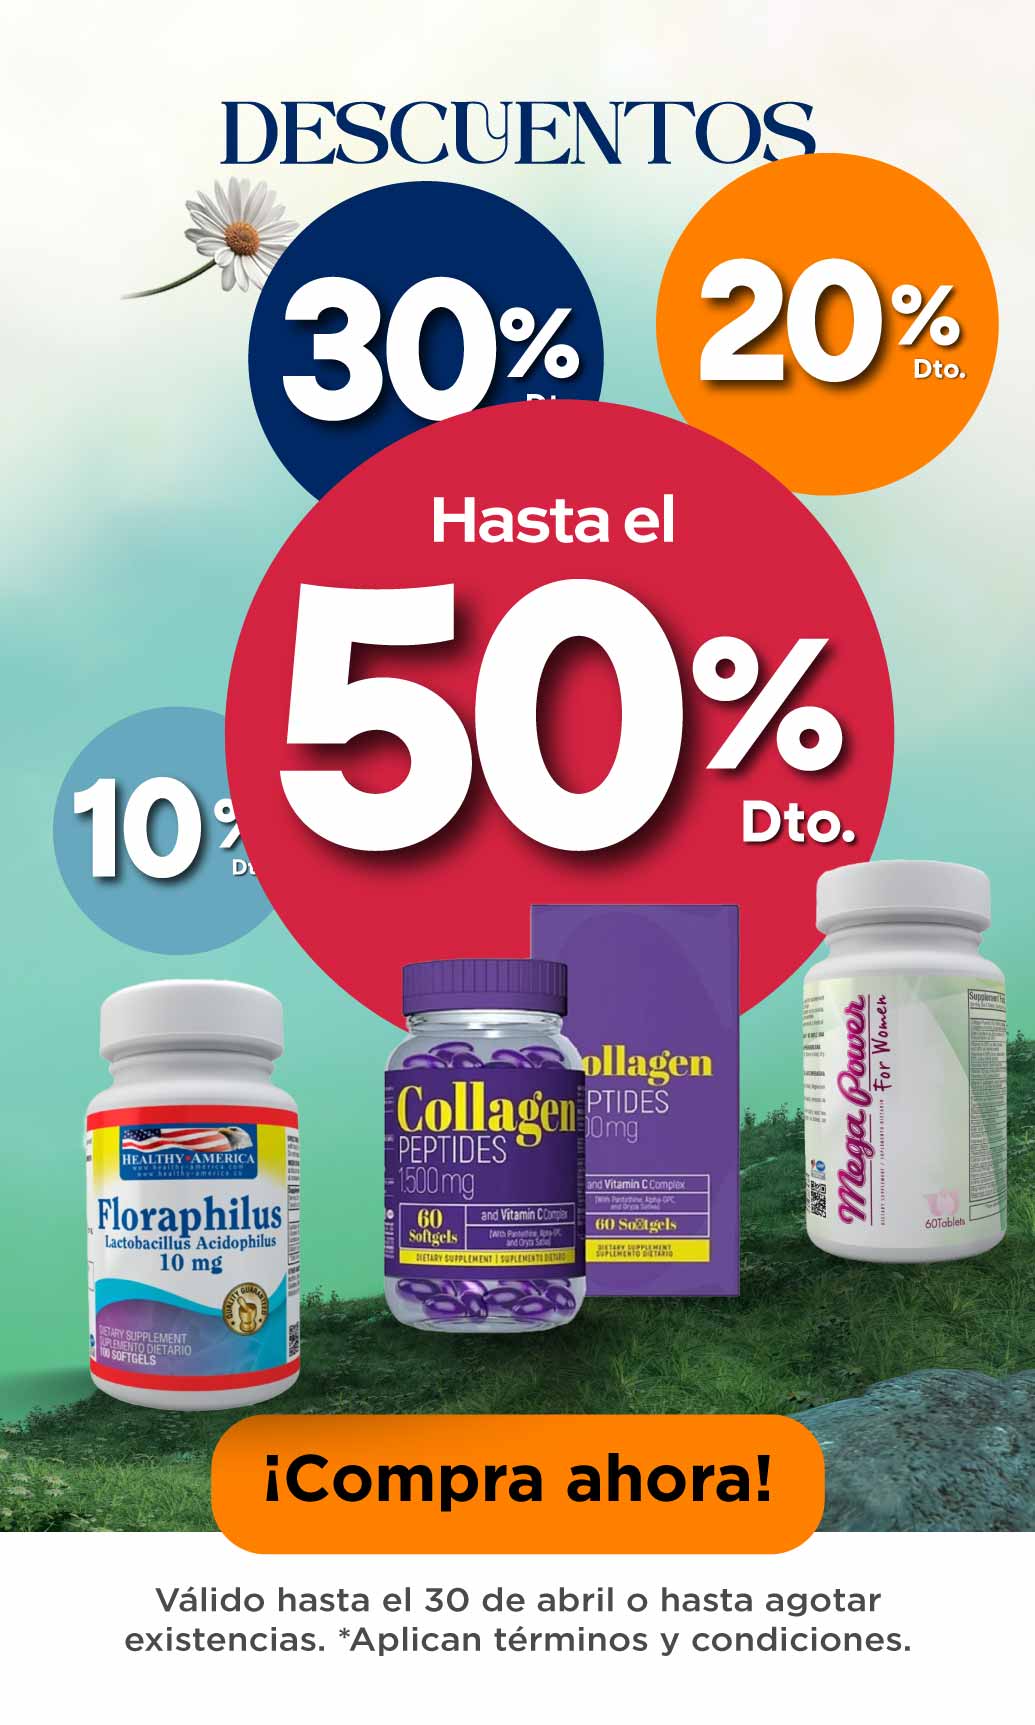 healthy america - colageno - vitaminas - artemisa tienda Bienestar